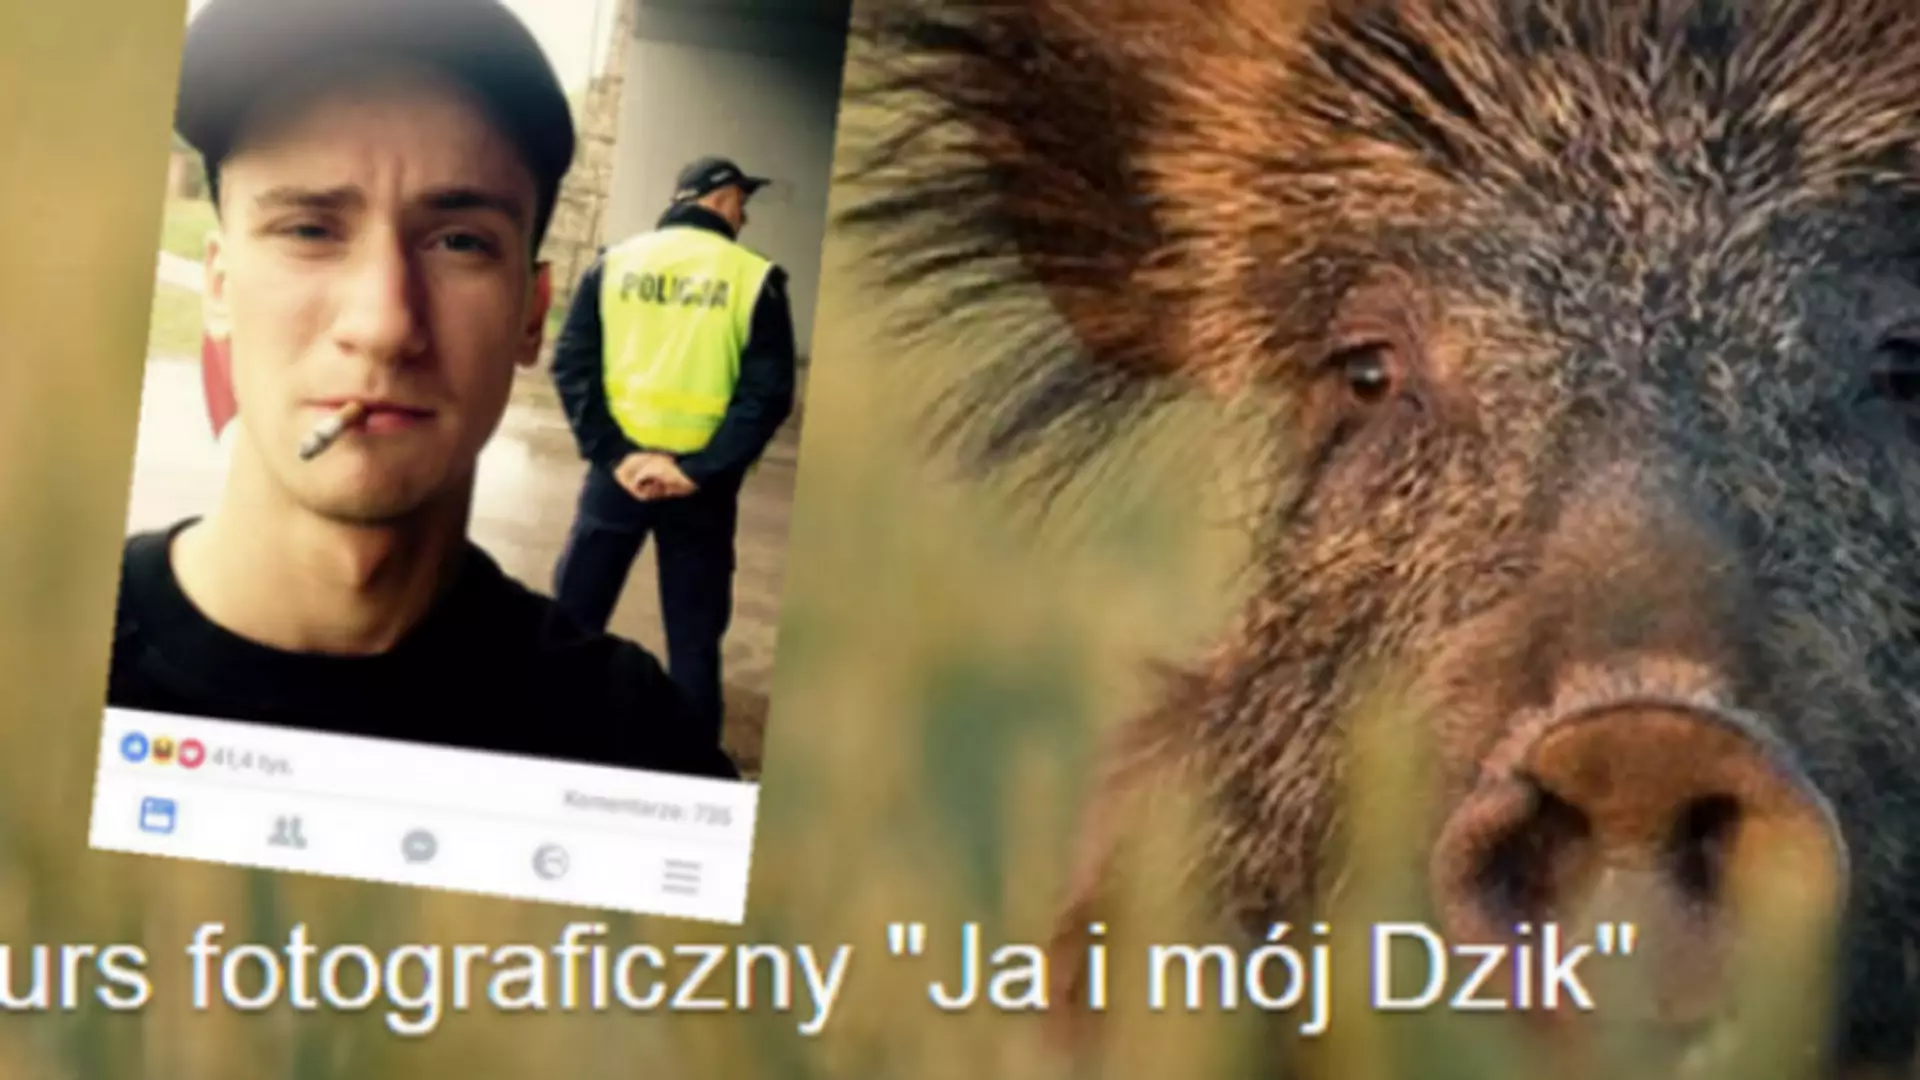 10 zdjęć z konkursu "Ja i mój Dzik", które przebiły zdjęcie z policjantem z konkursu "Ja i mój pies"